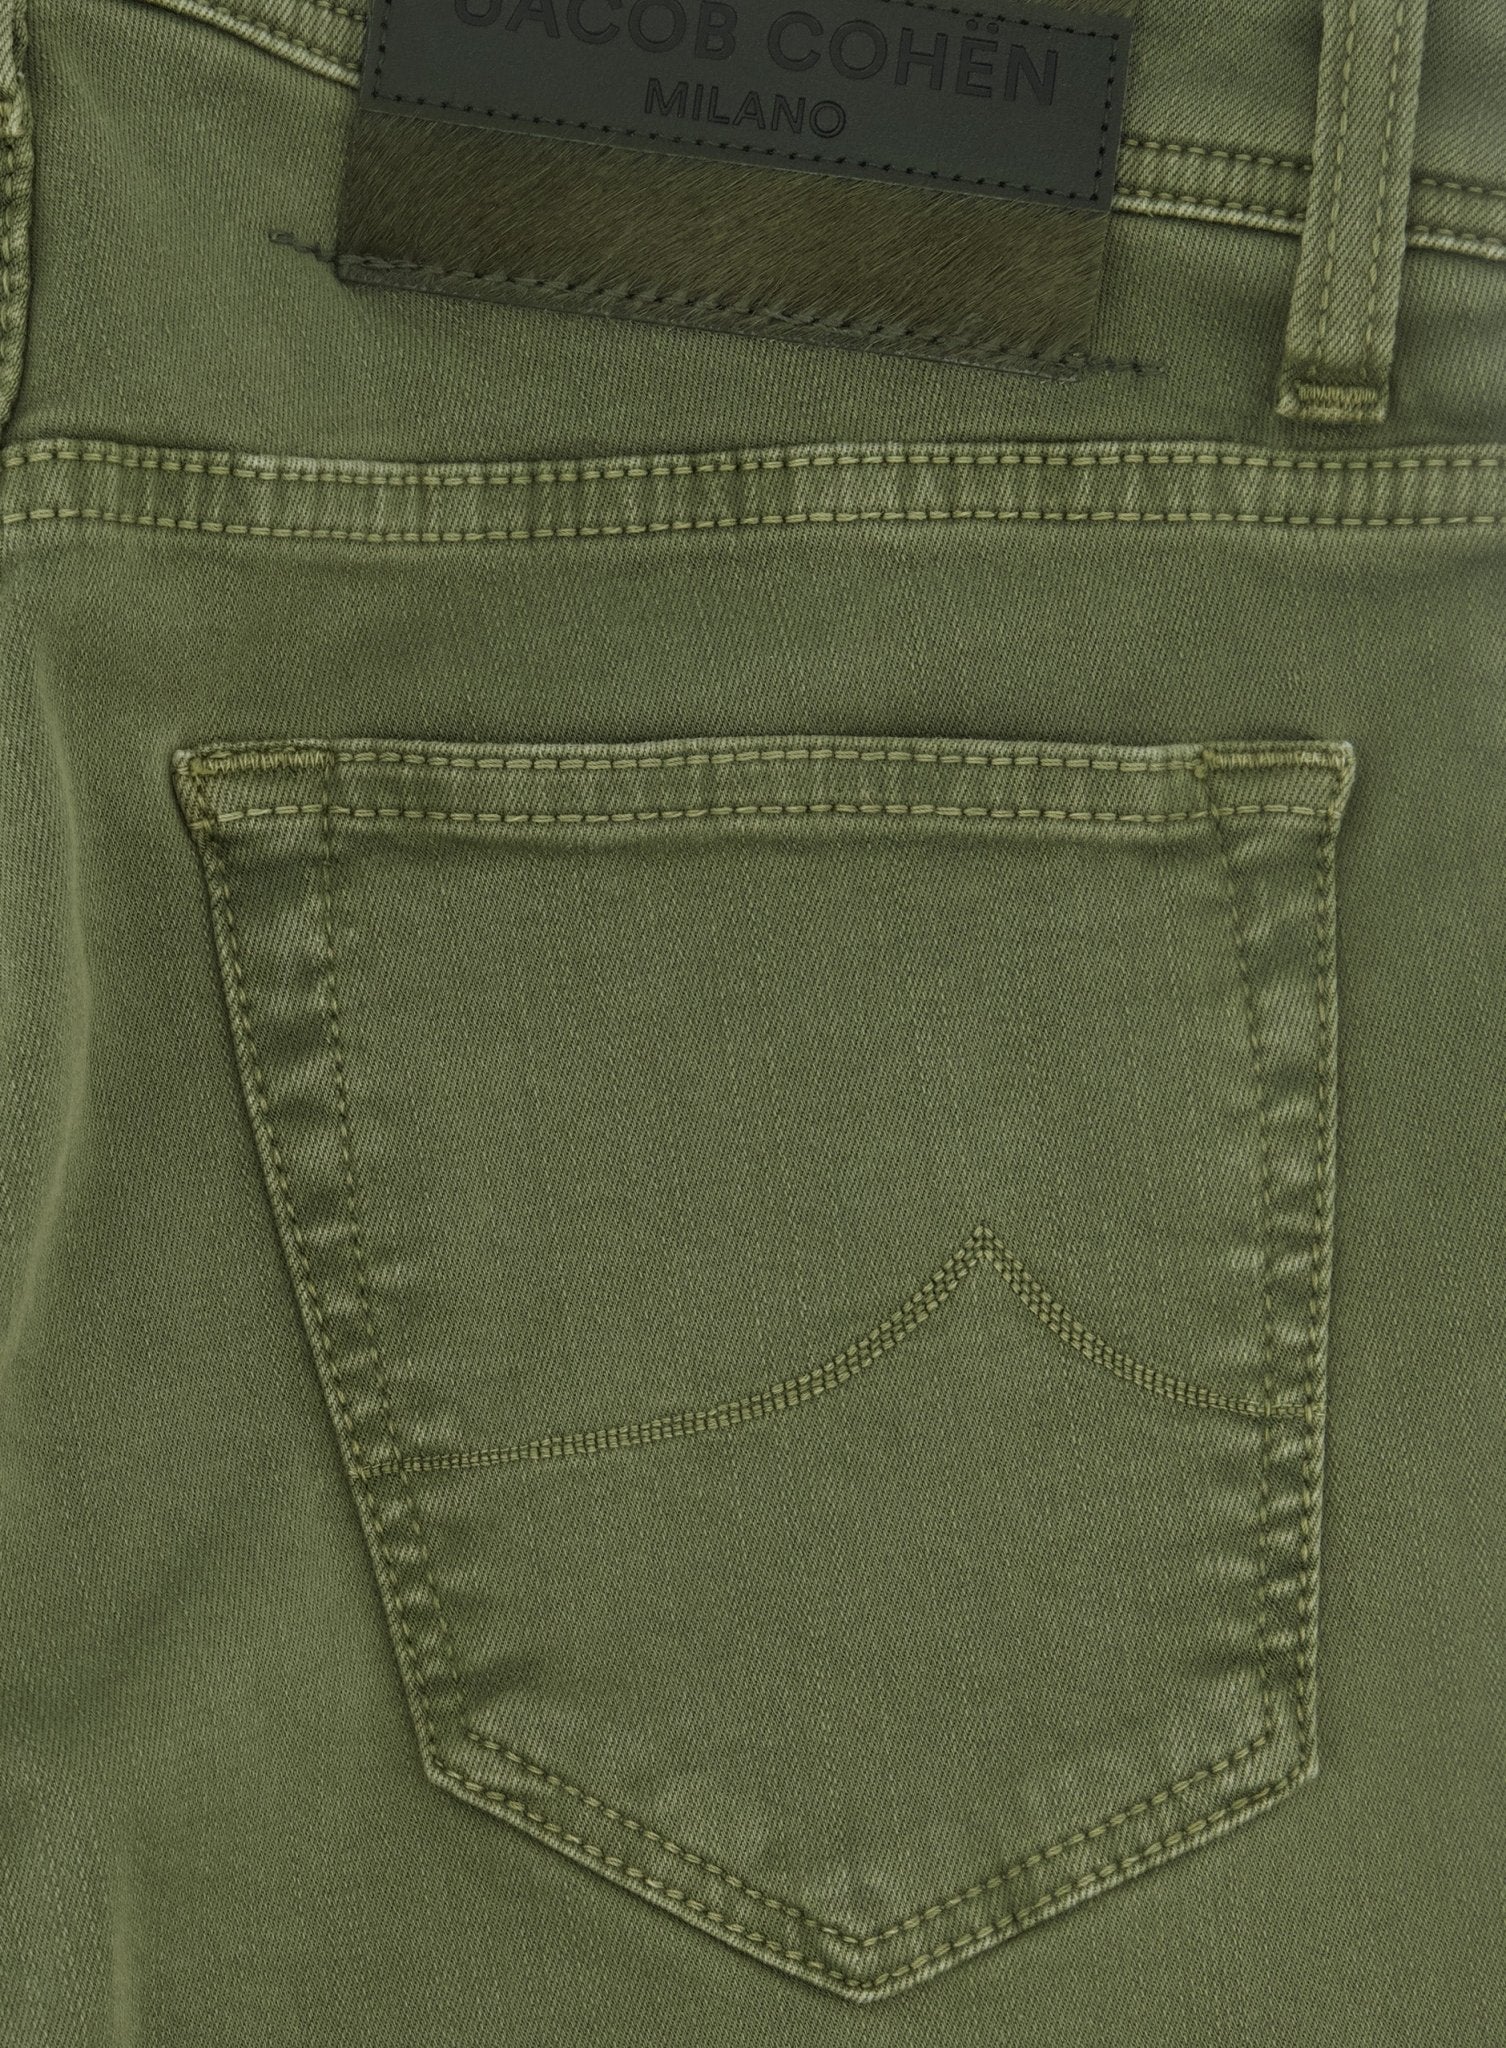 Nick Slim-fit jeans | Groen 